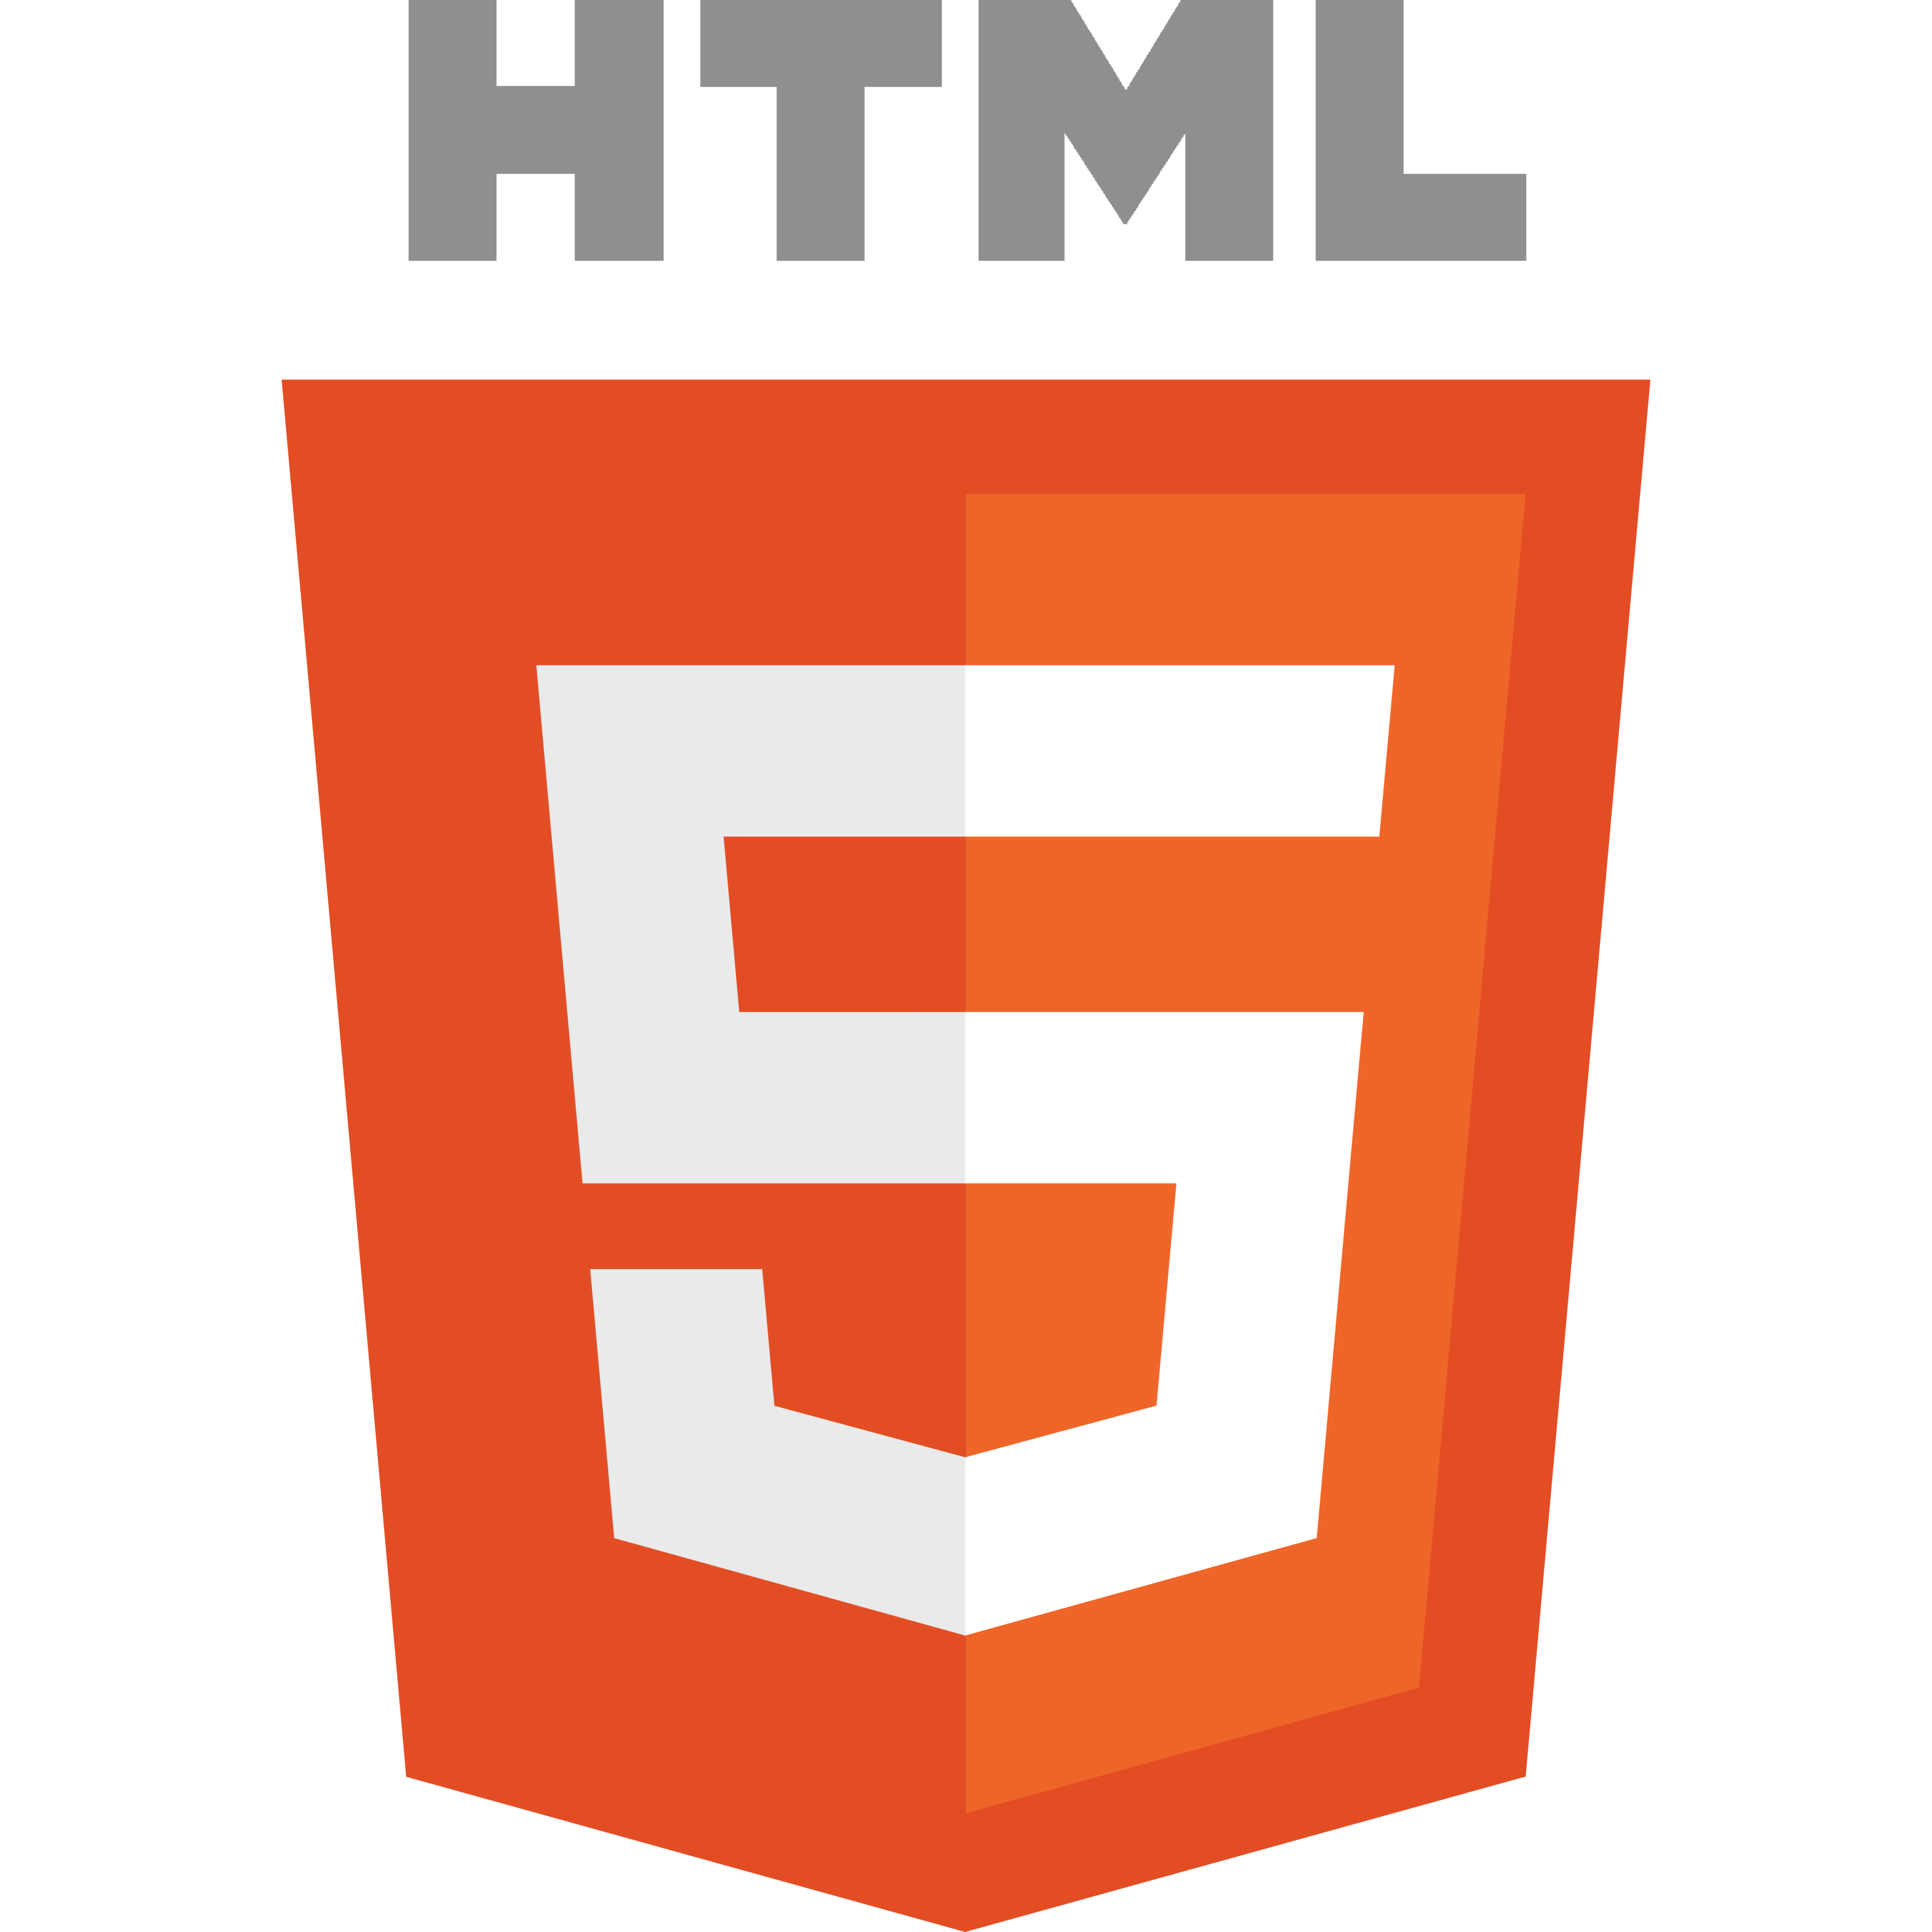 Jeux HTML5